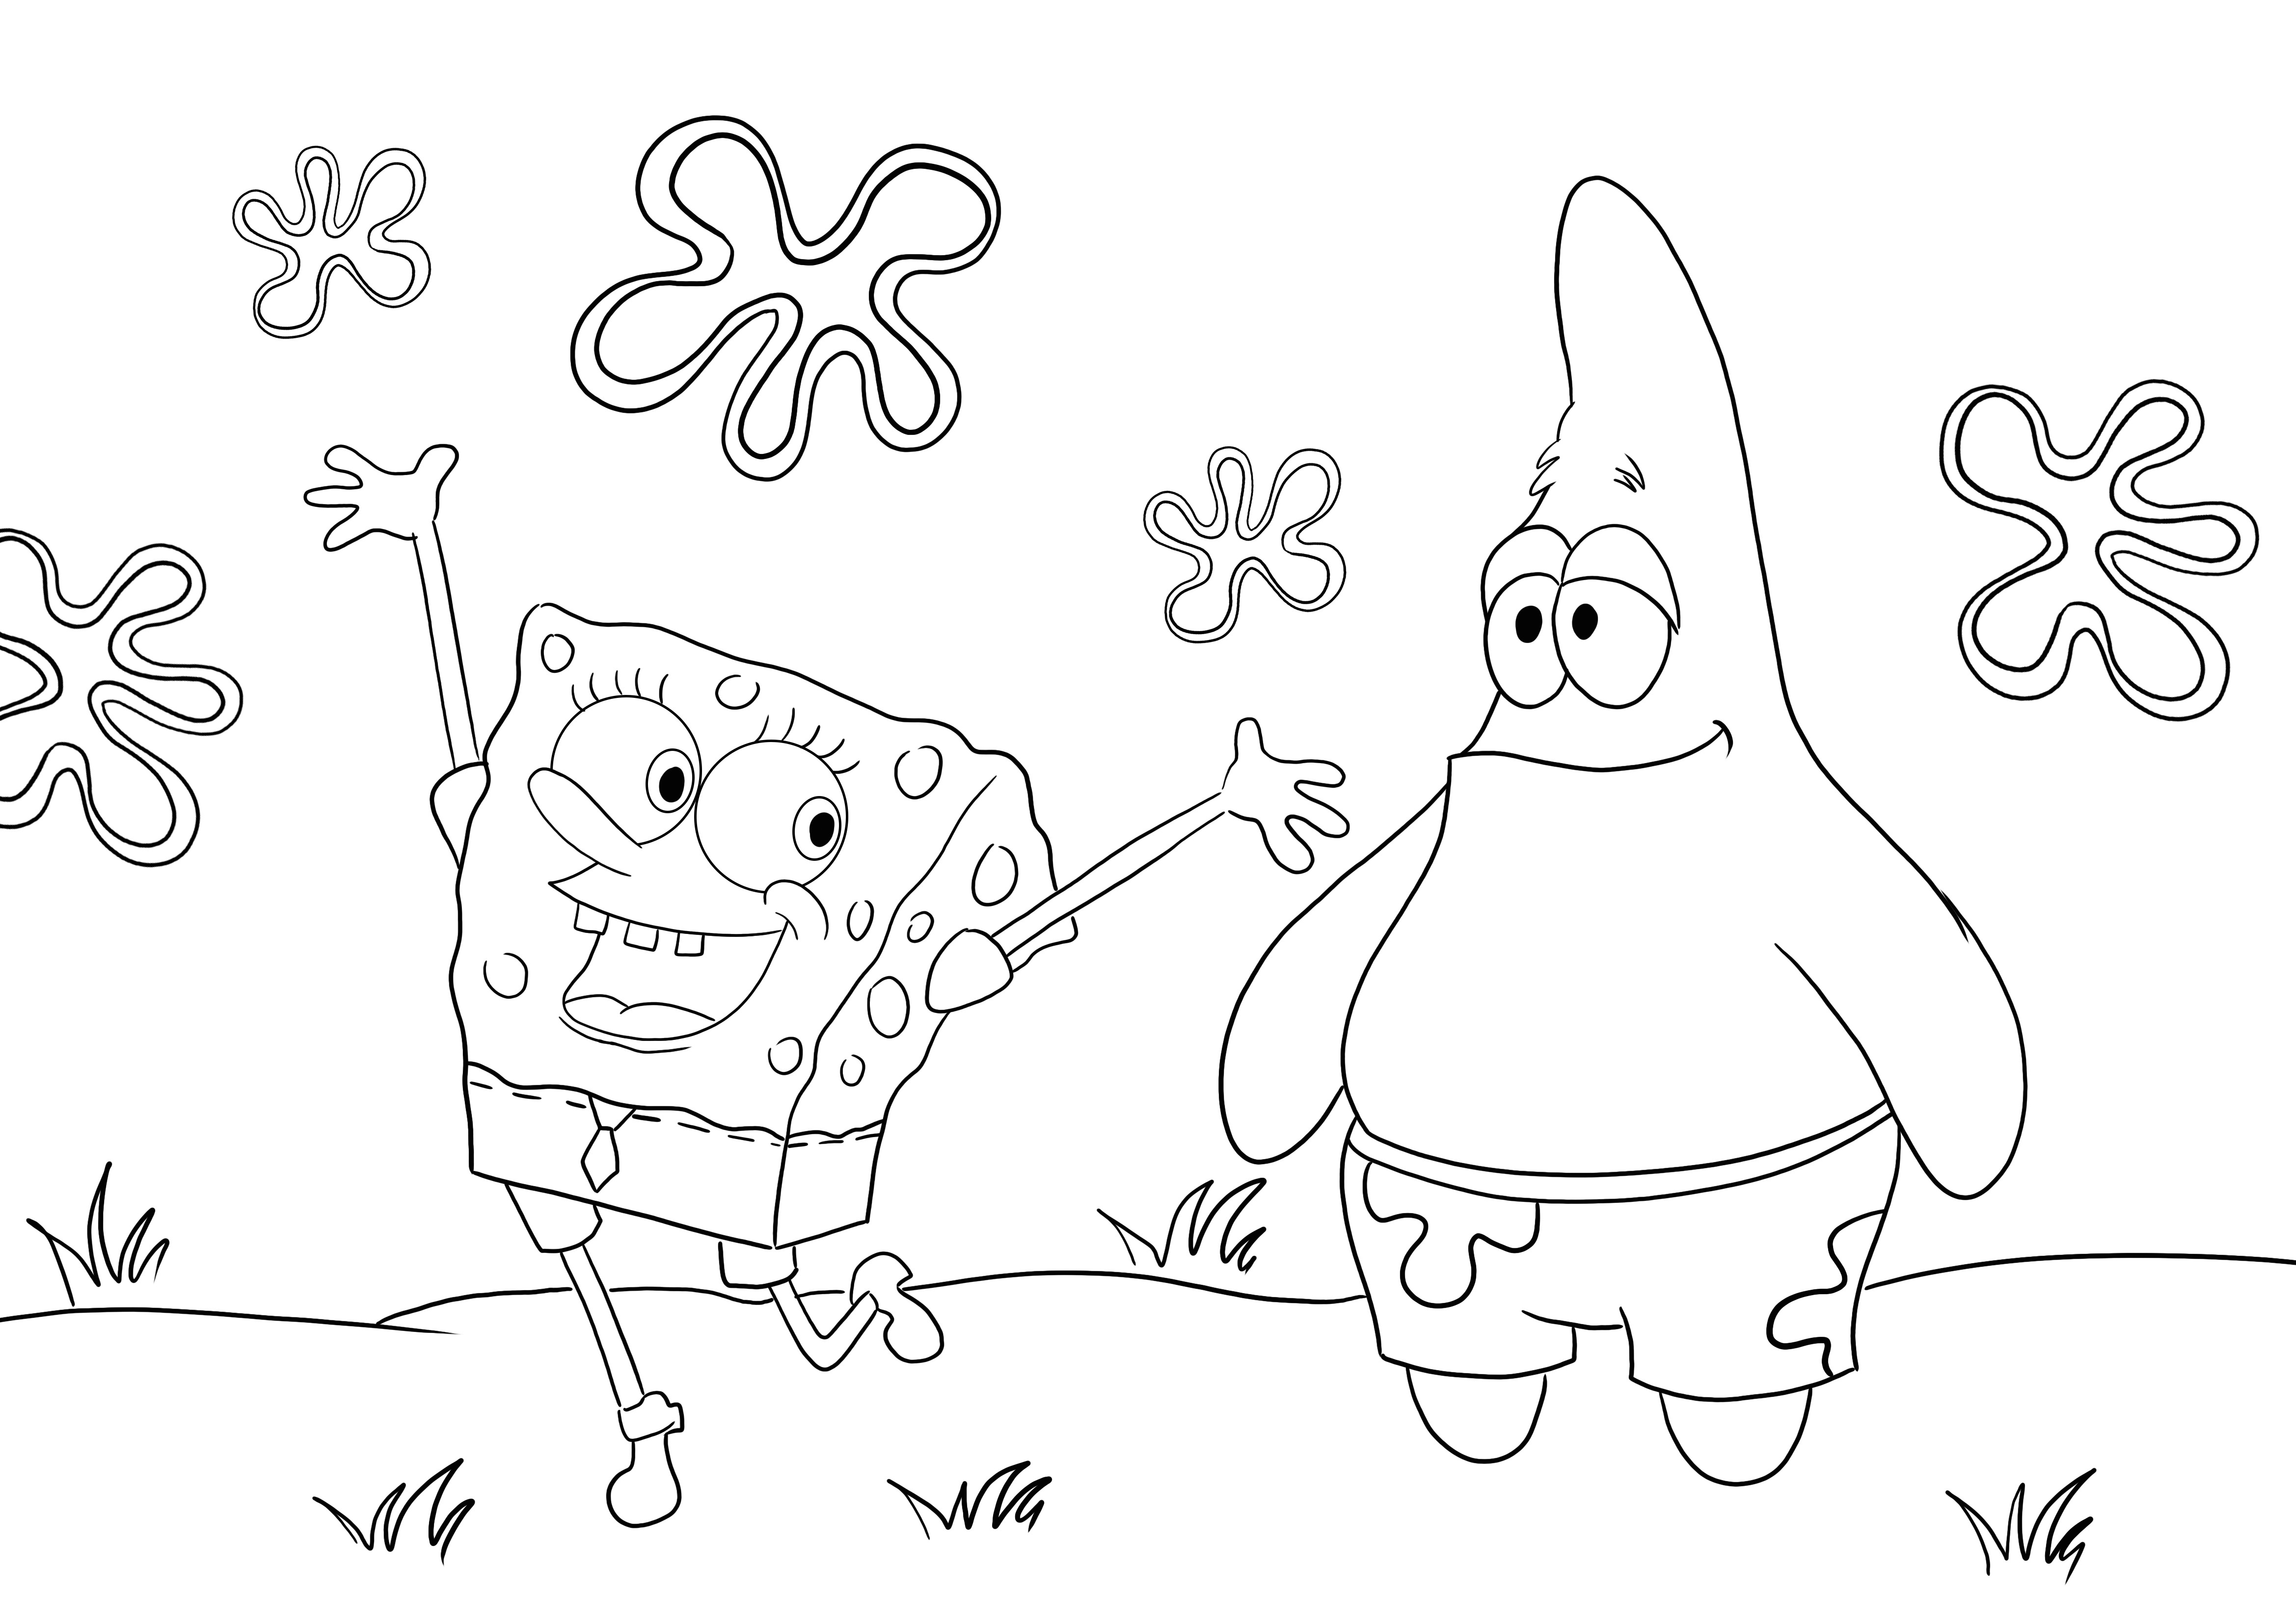 Happy Sponge SquarePants dan temannya Patrick untuk pewarnaan dan pencetakan gratis